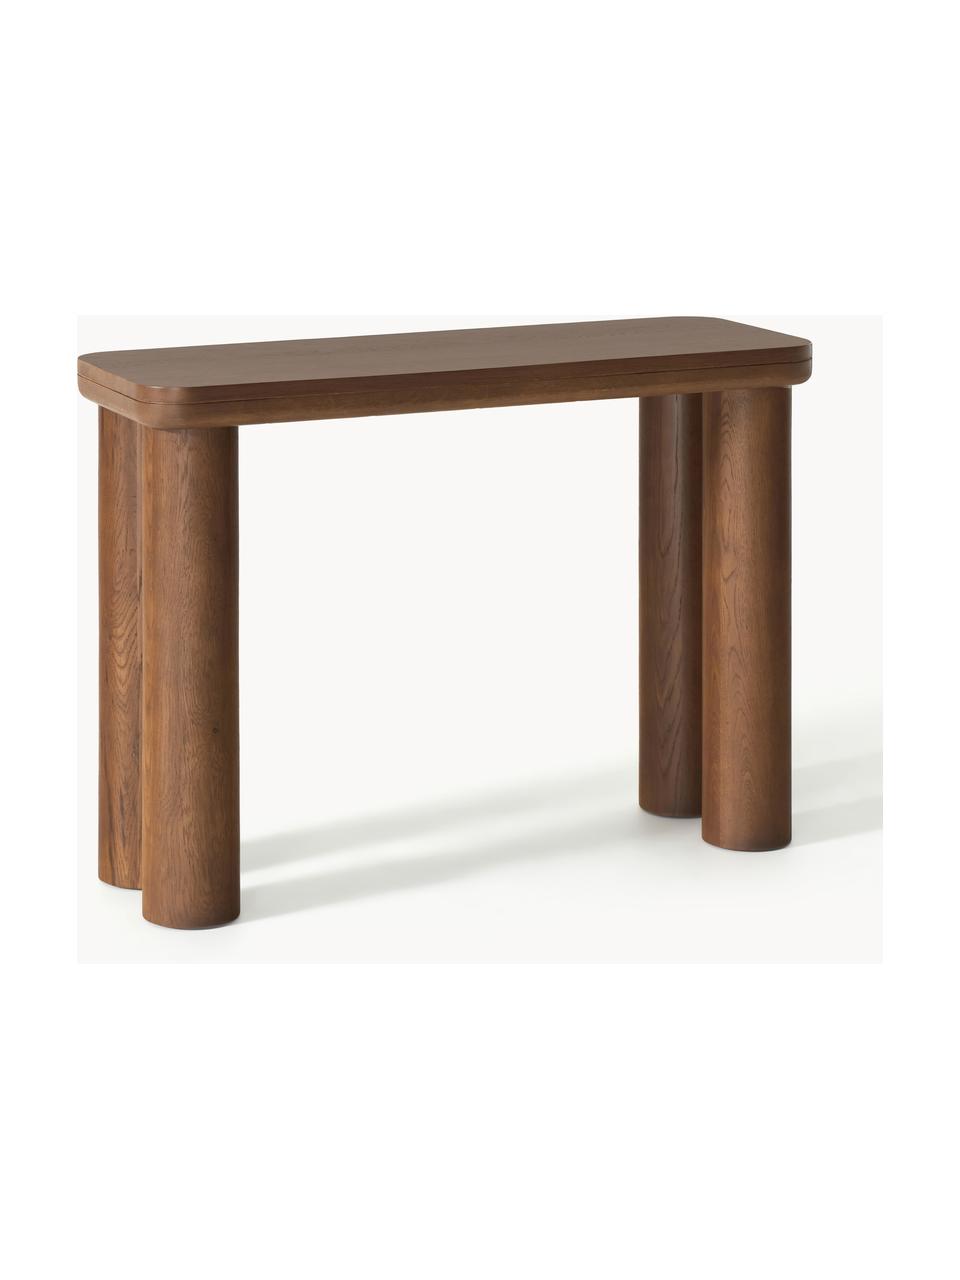 Konzolový stolek z dubového dřeva Kalia, Masivní dubové dřevo

Tento produkt je vyroben z udržitelných zdrojů dřeva s certifikací FSC®., Dubové dřevo, tmavě lakované, Š 110 cm, V 77 cm